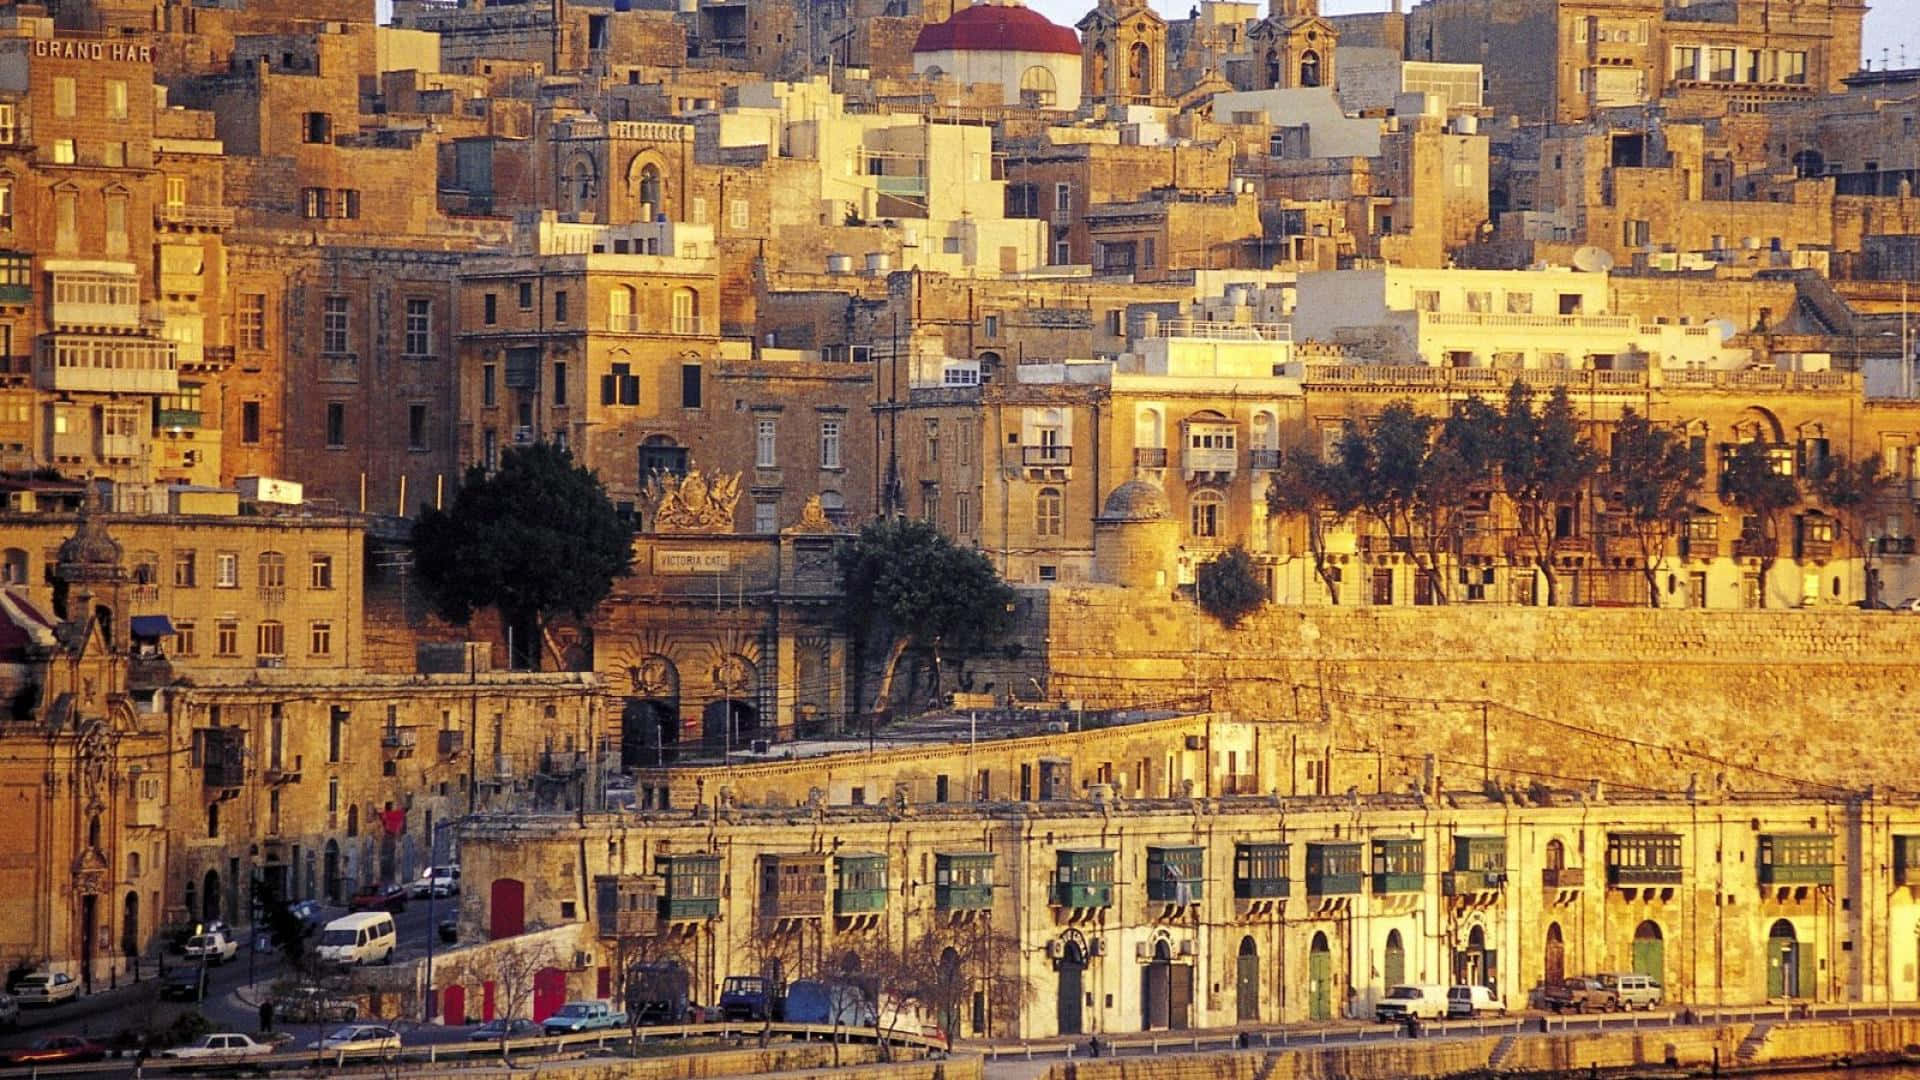 Vistapanorámica De La Hermosa Isla De Malta.